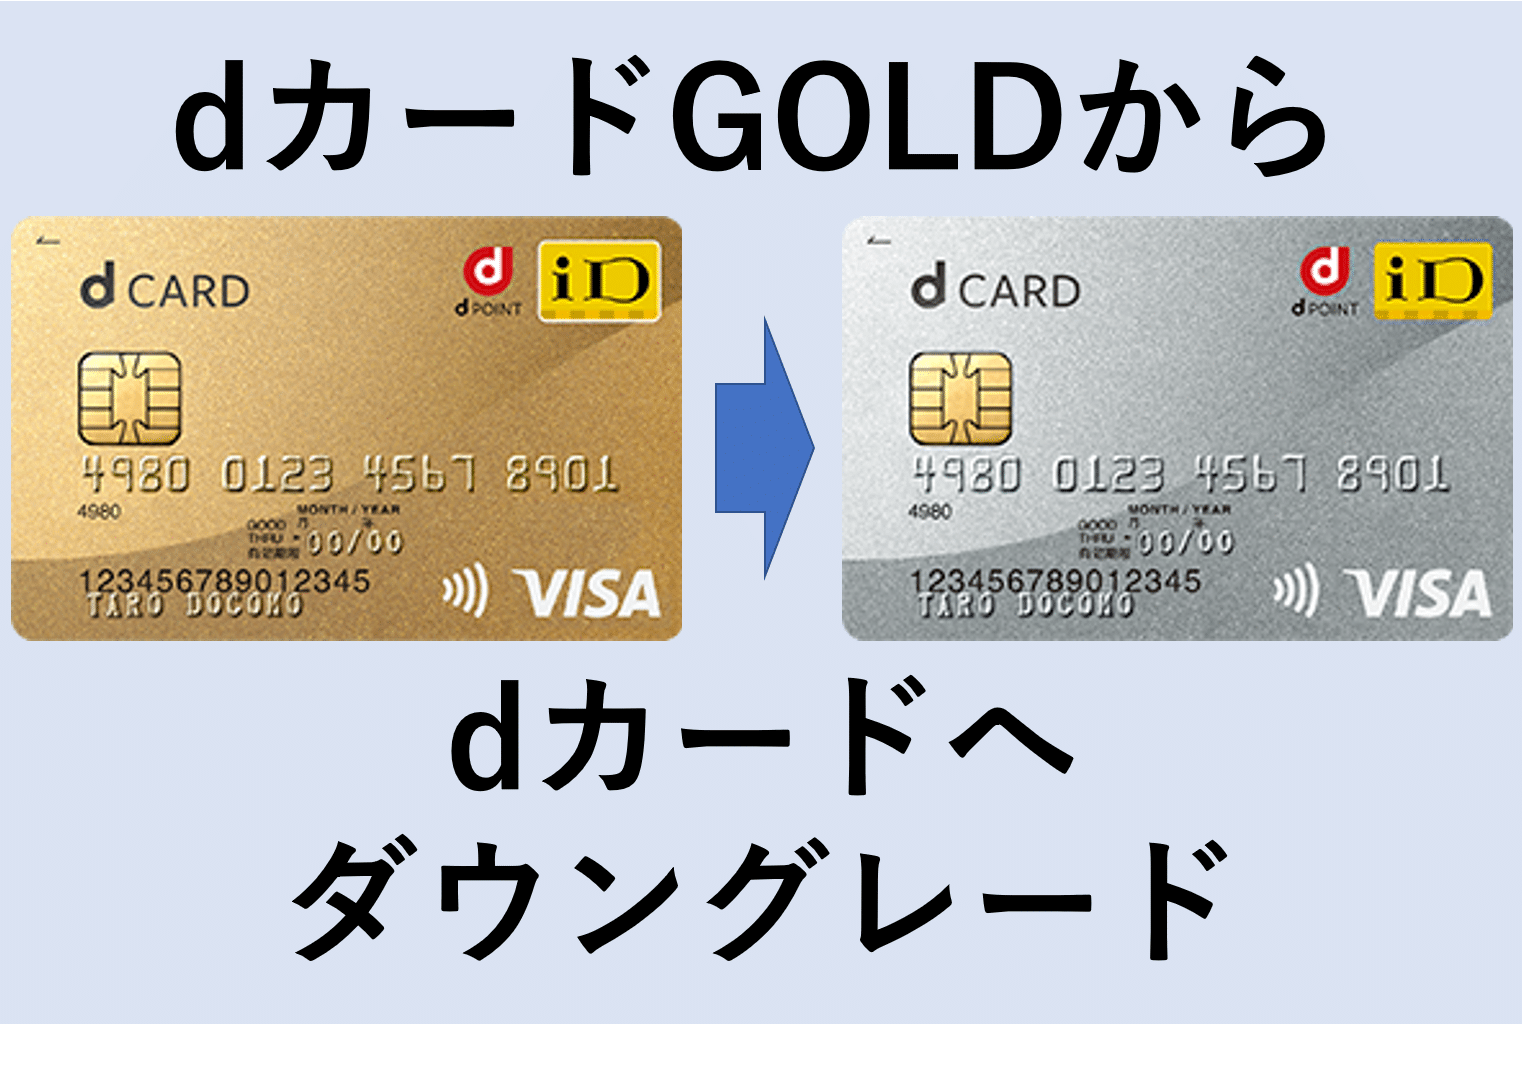 会費 年 d ゴールド カード